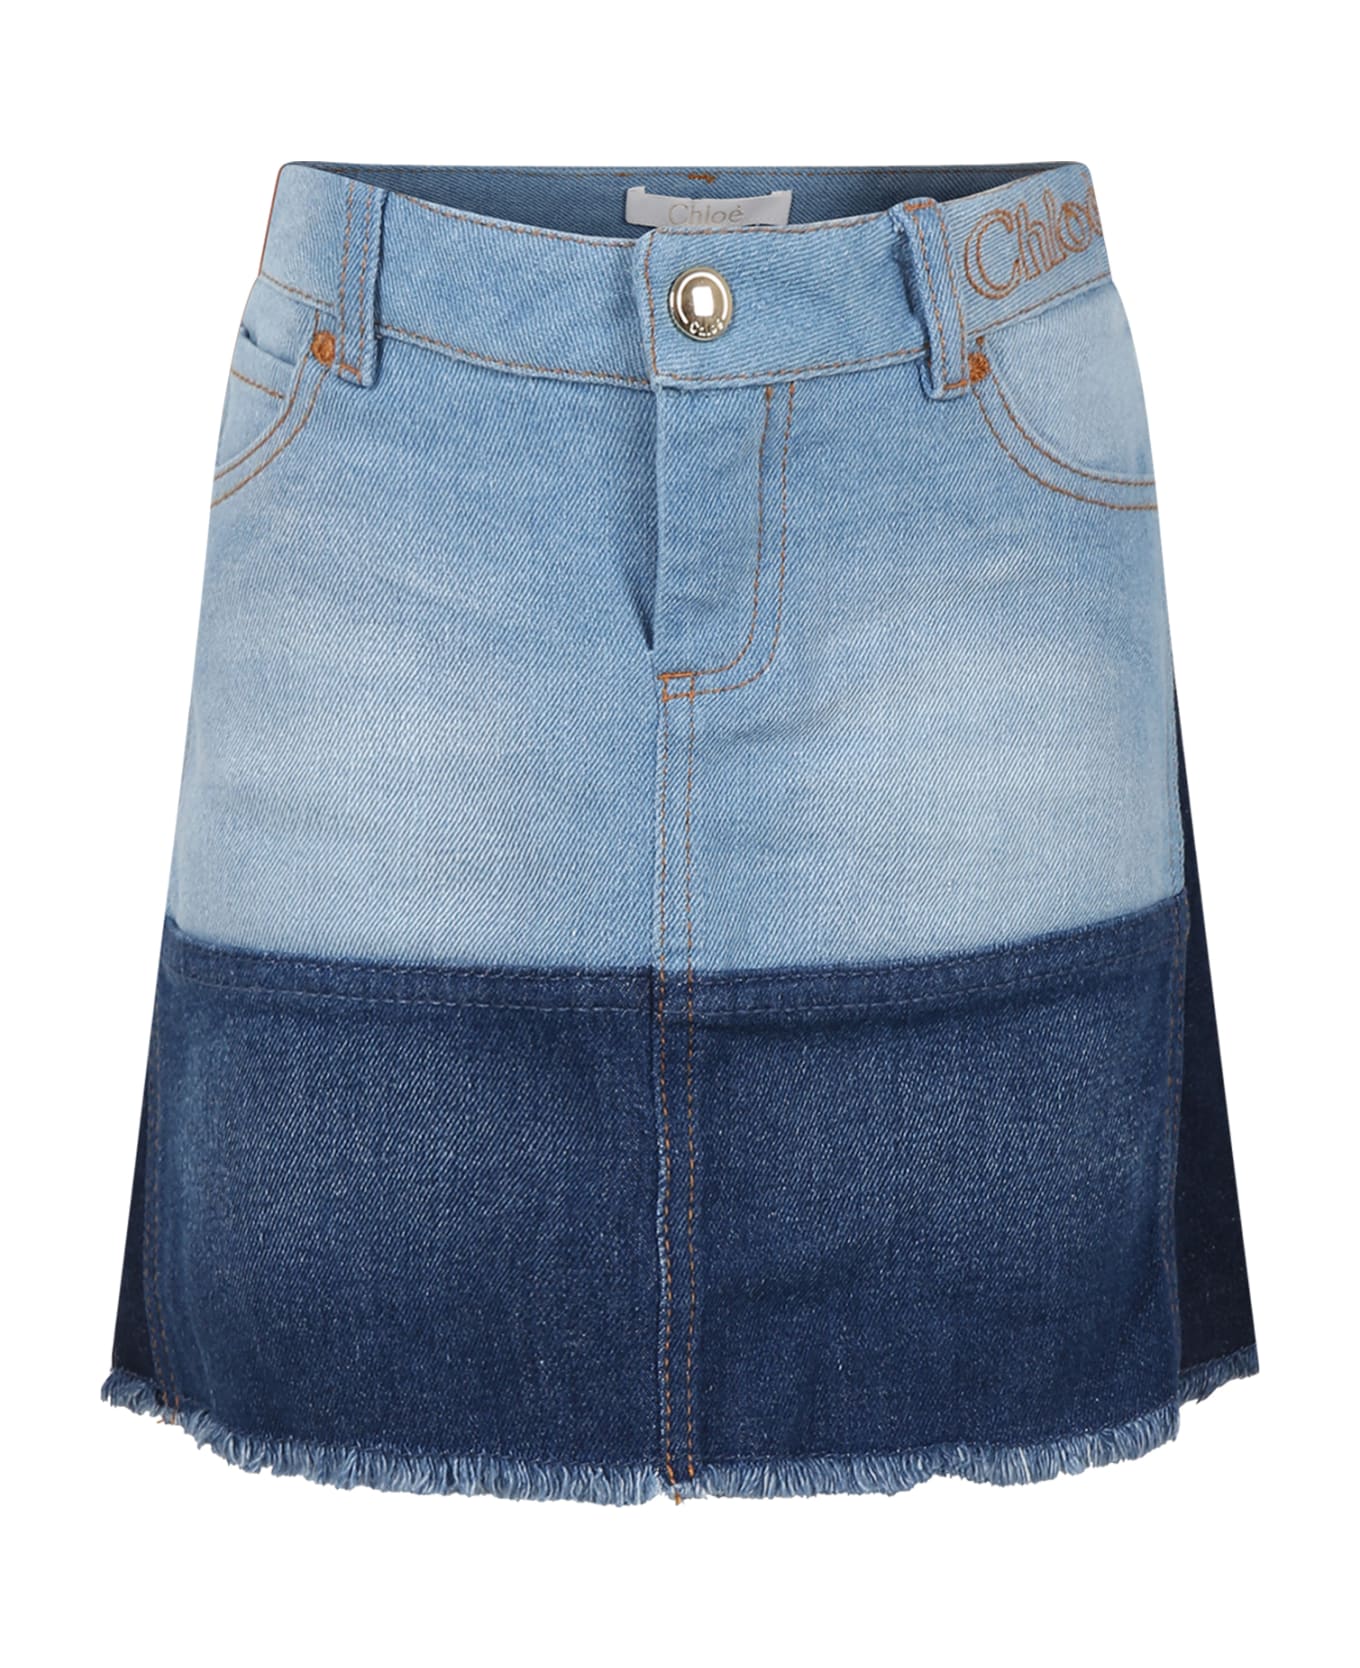 Chloé Casual Blue Skirt For Girl - Denim